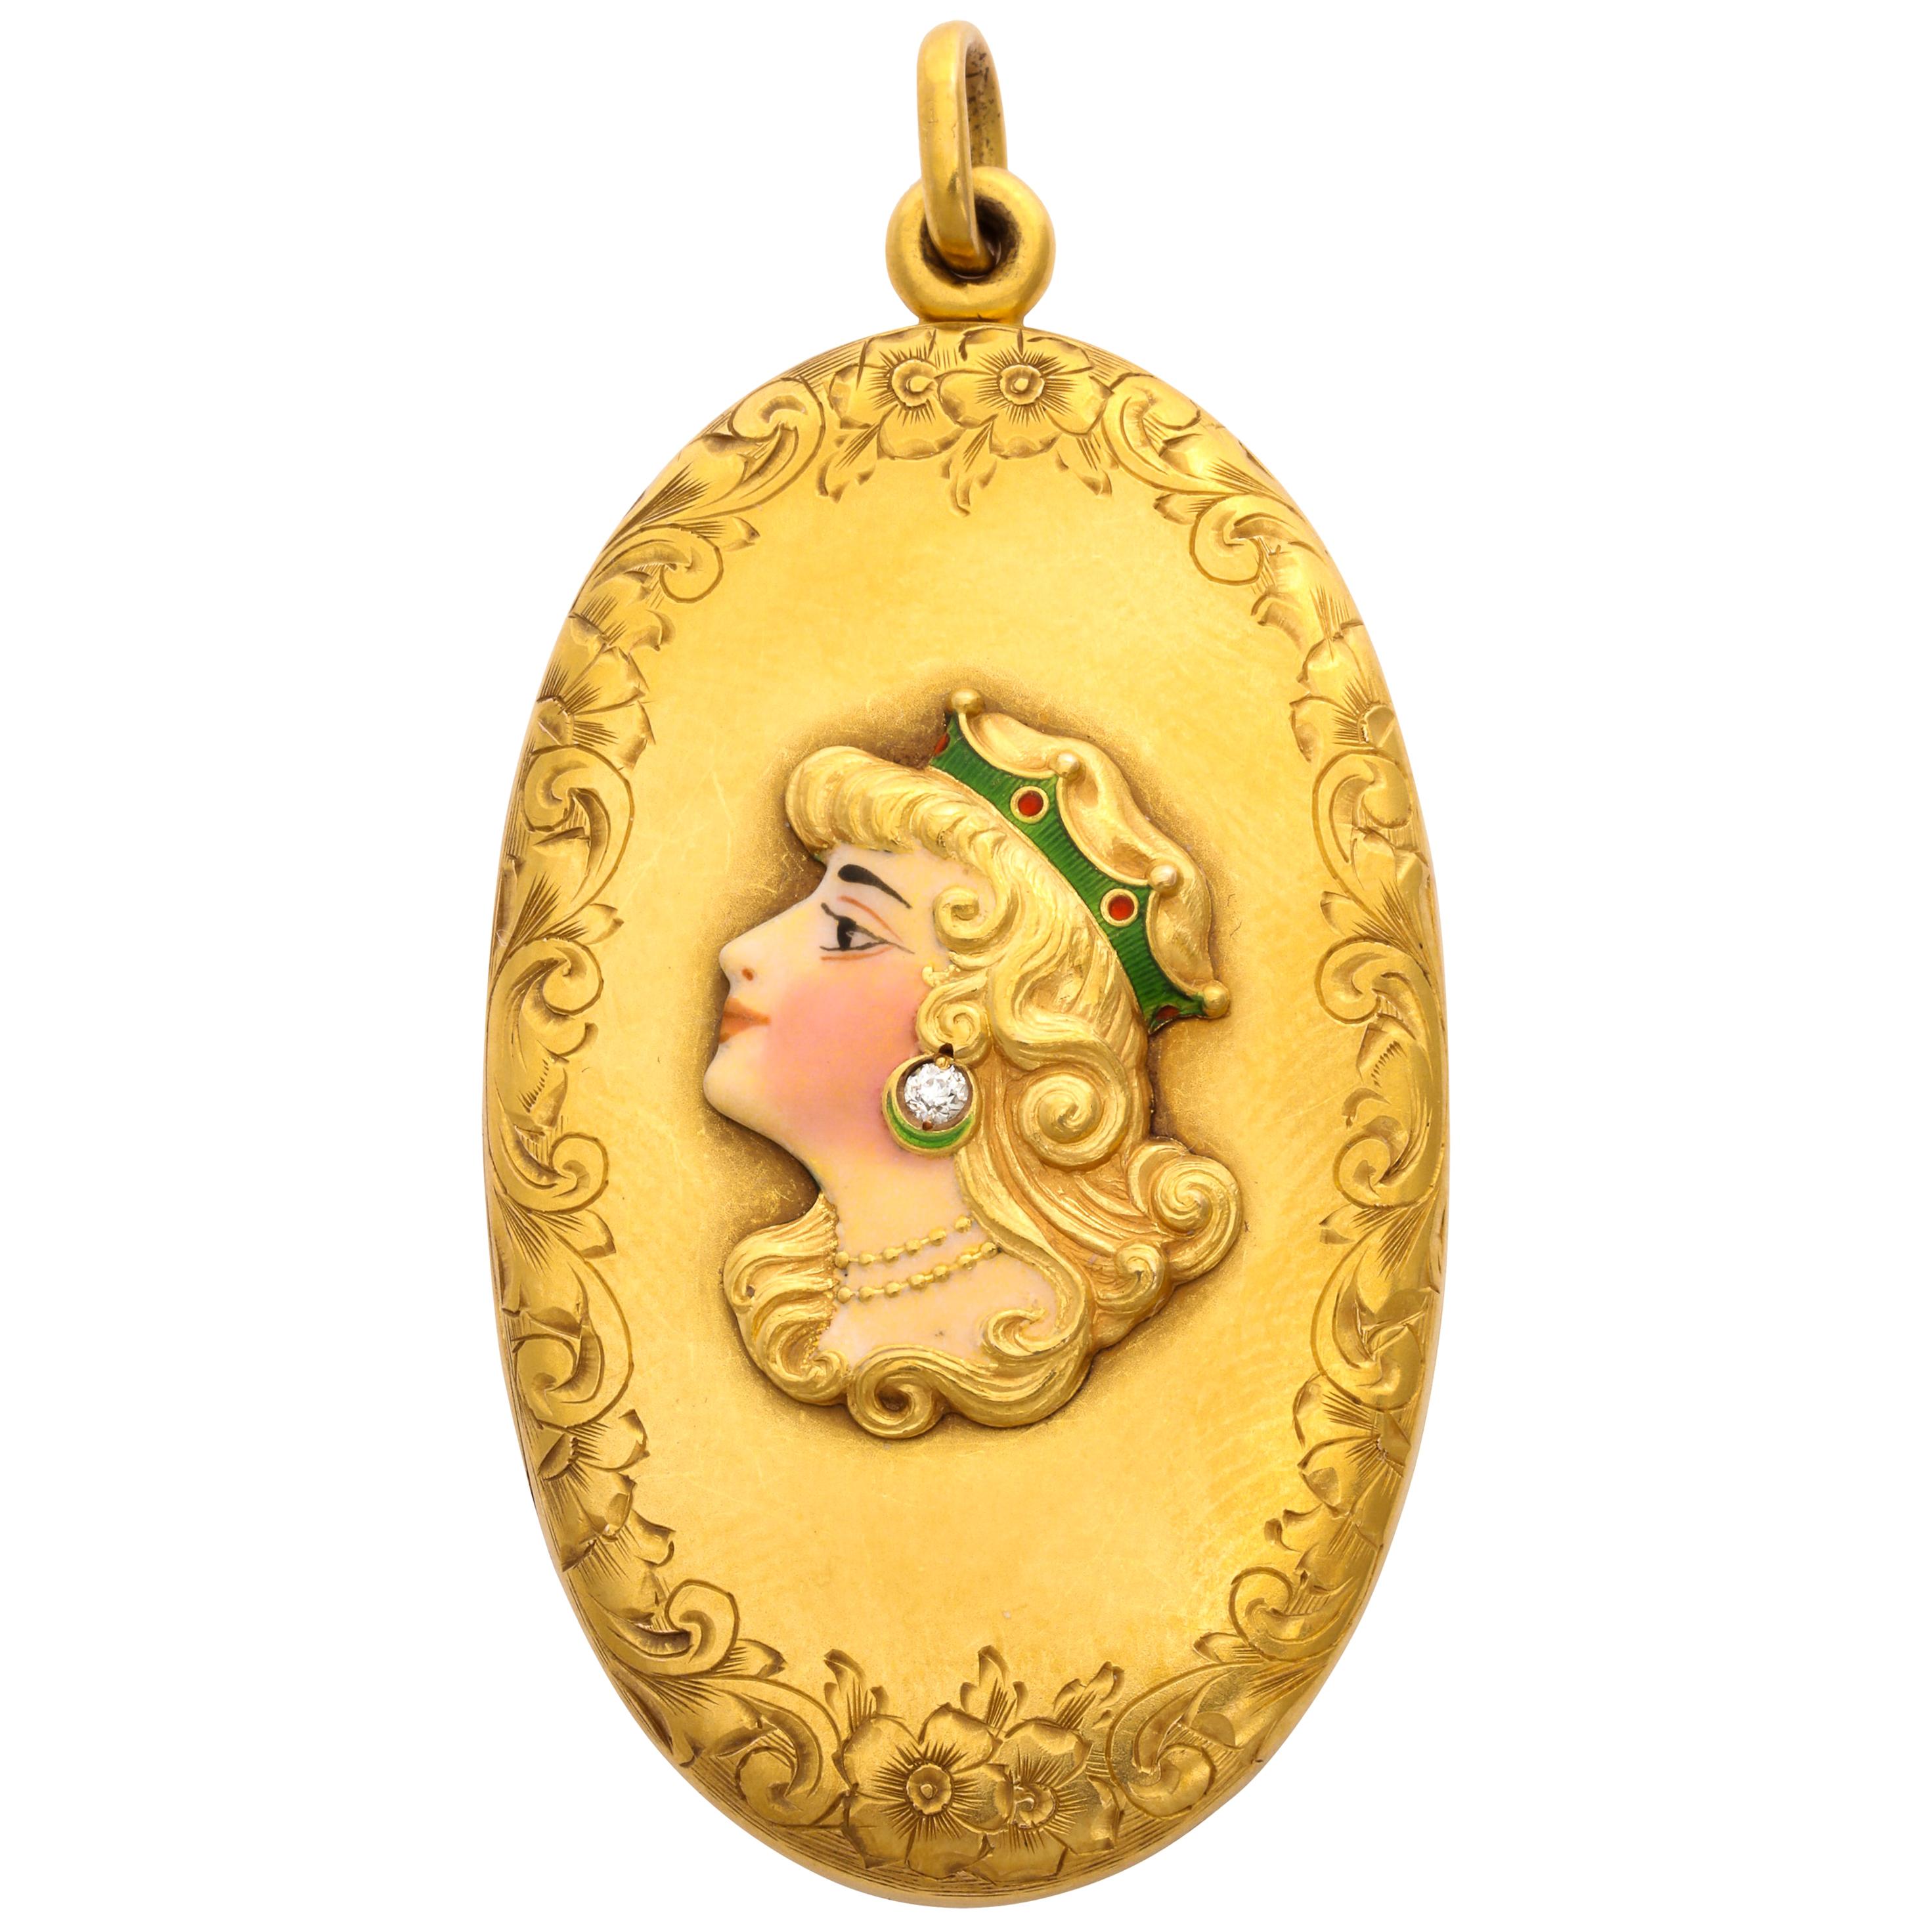 1900er Jahre Alling & Co. Amerikanisches Jugendstil-Medaillon aus emailliertem Gold